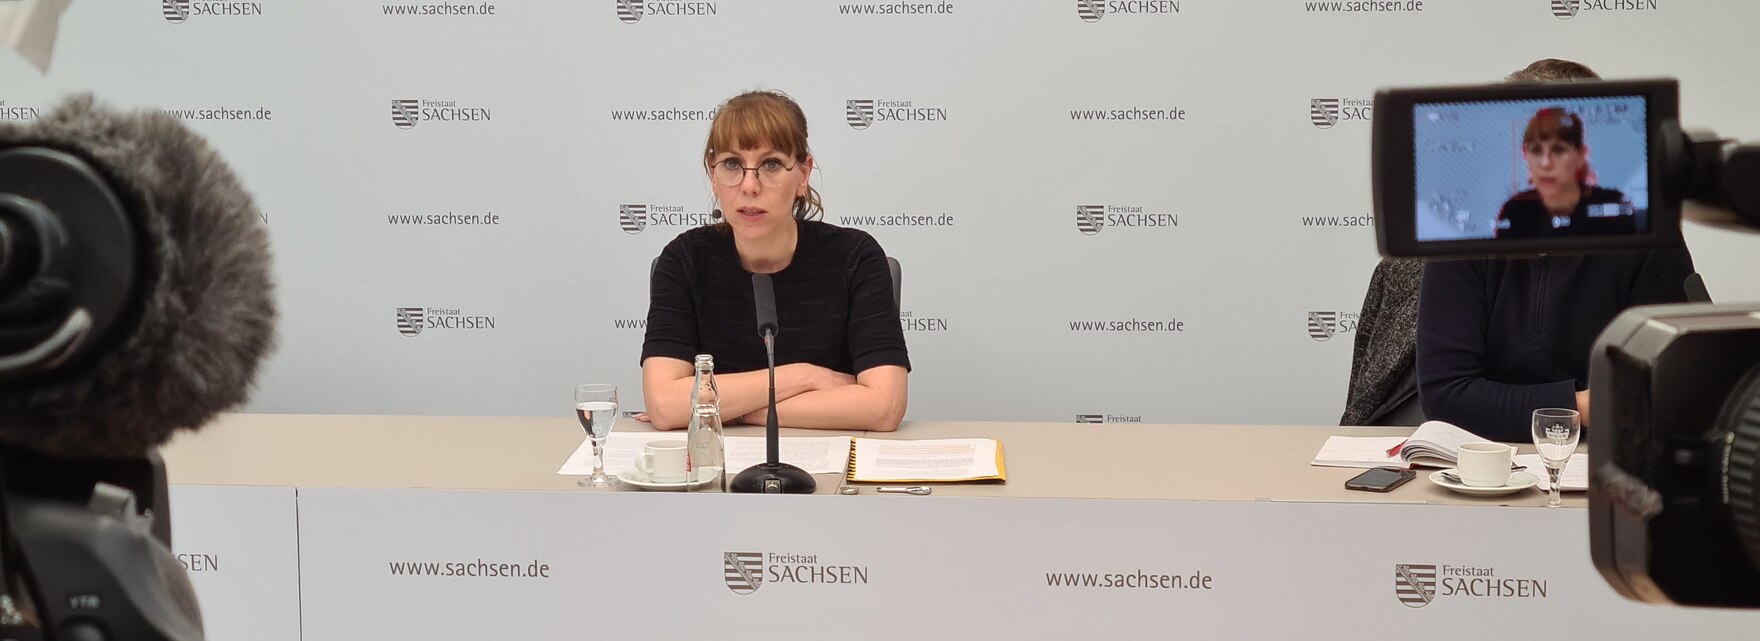 Katja Meier mit verschränkten Armen an einem Tisch, im Hintergrund eine weiße Wand mit Schriftzügen wie Freistaat Sachsen etc.